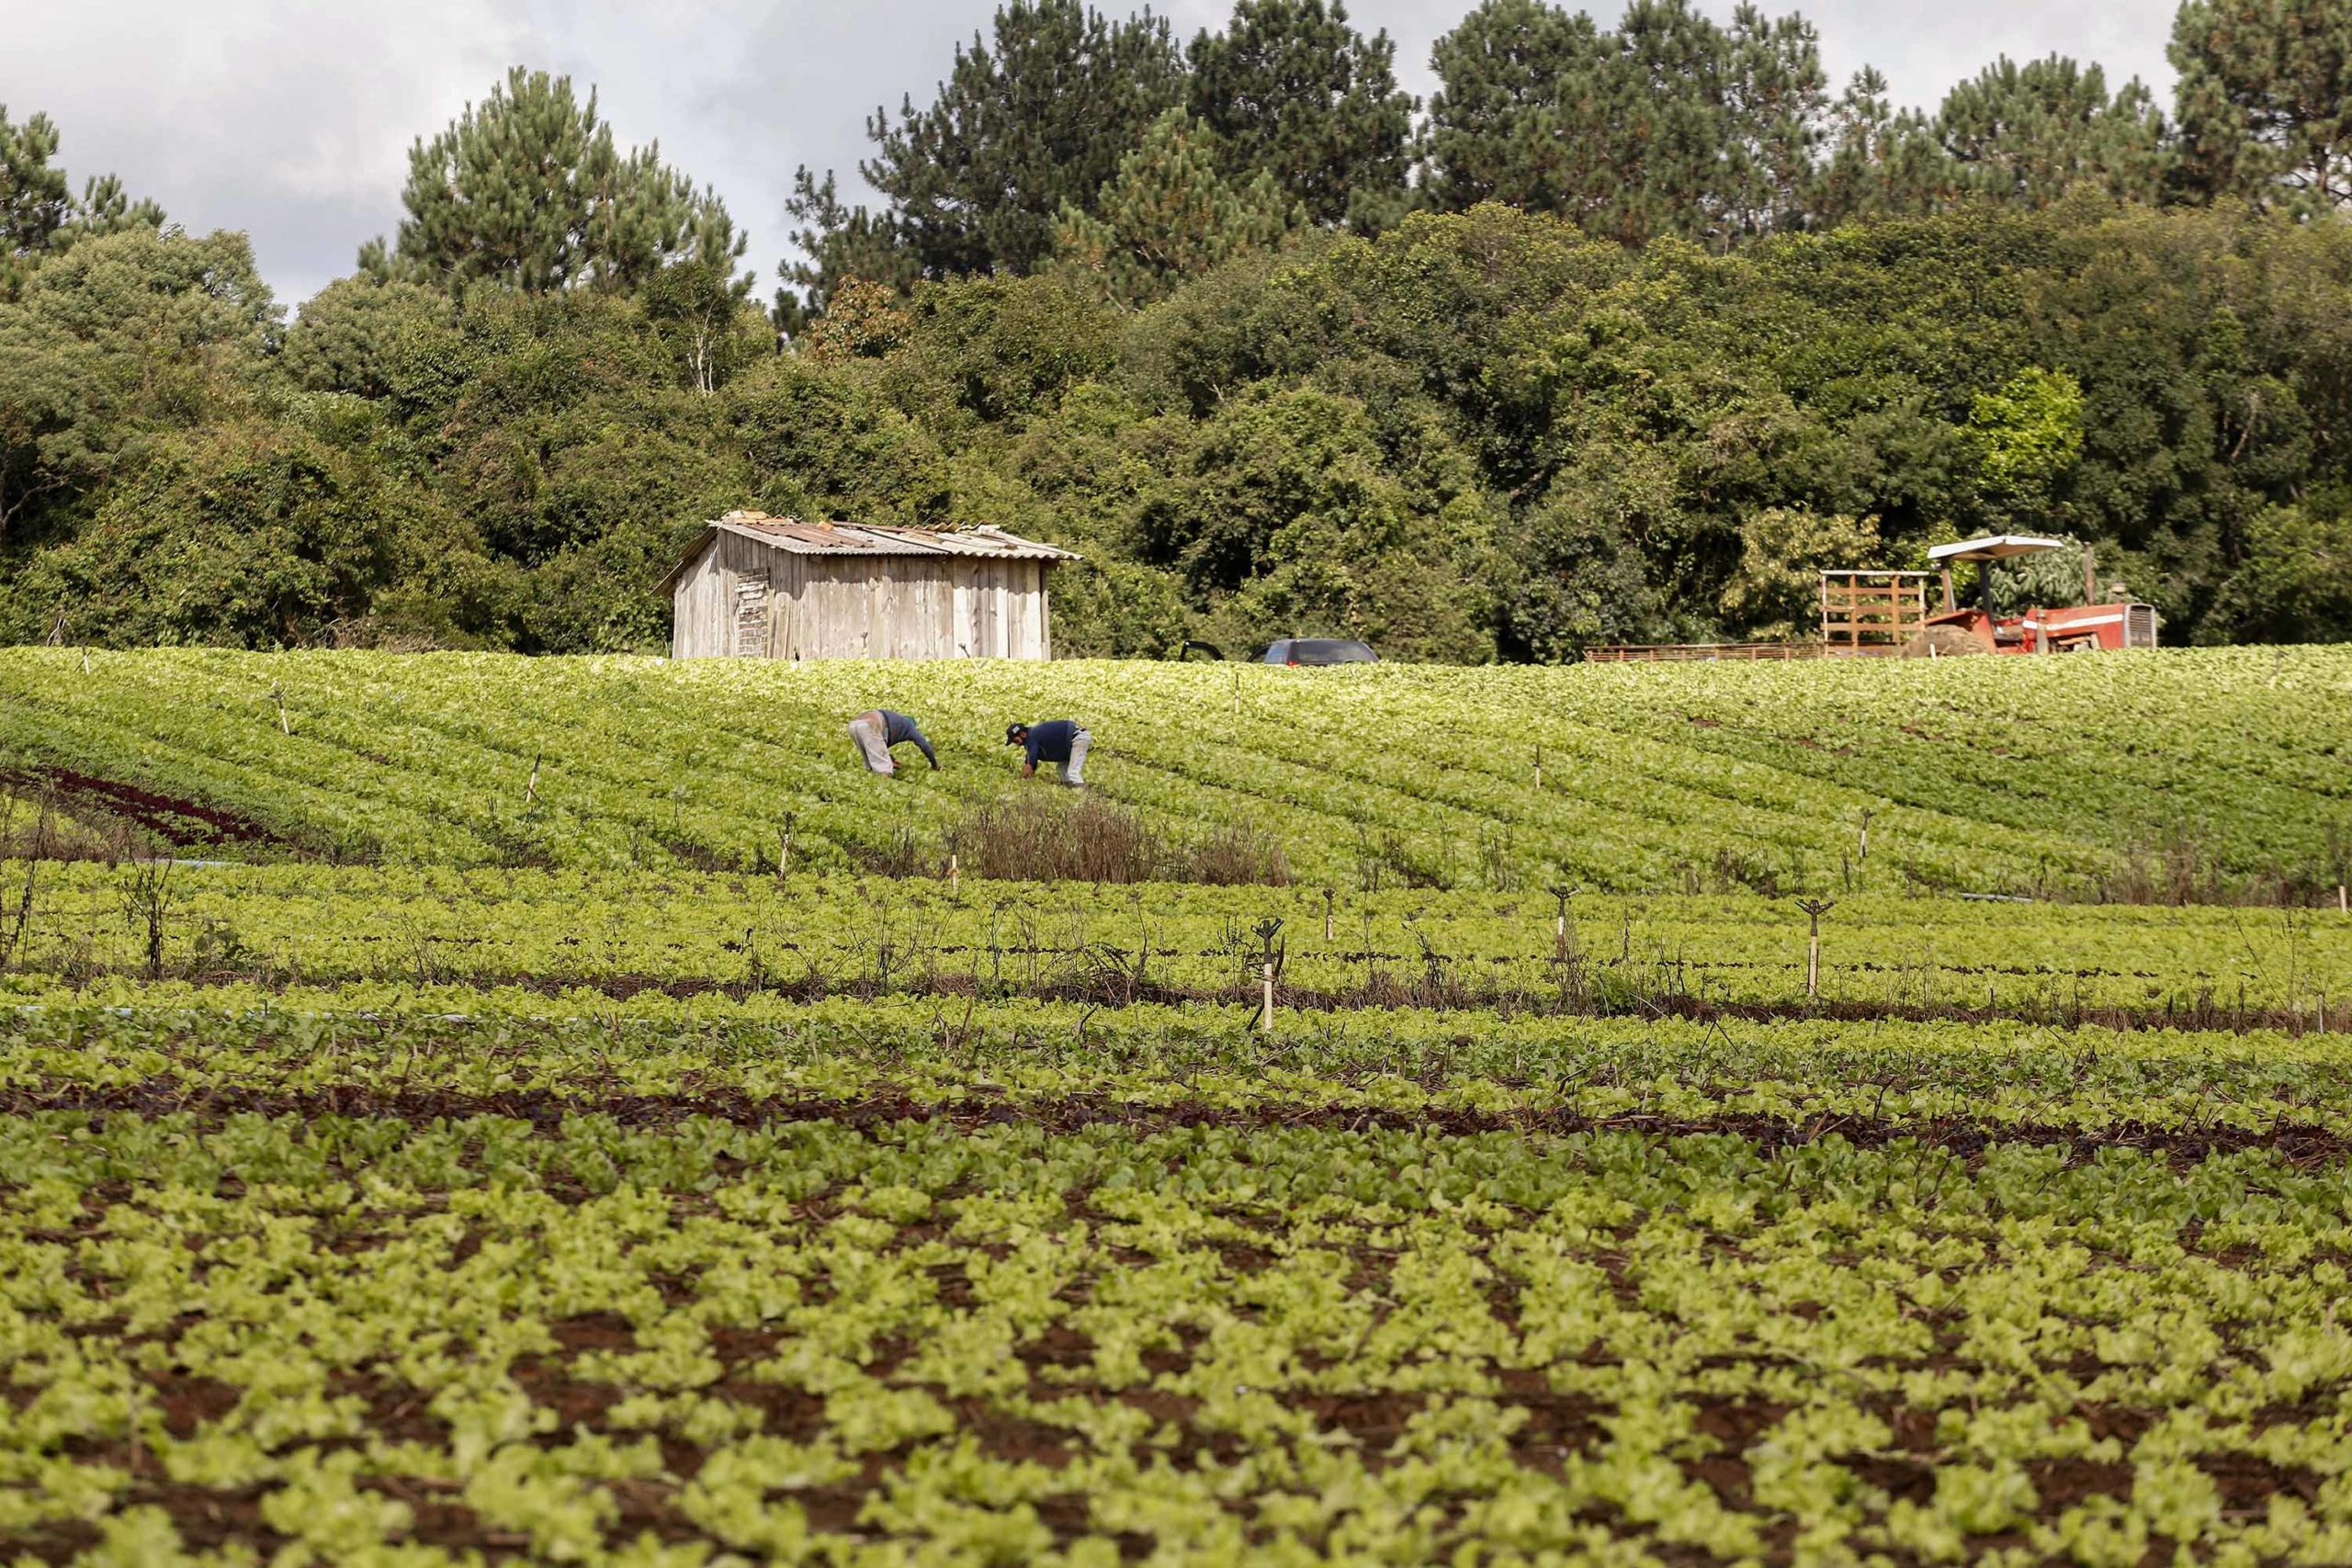 Fazenda Urbana vai testar 12 projetos inovadores de agricultura e otimização de recursos